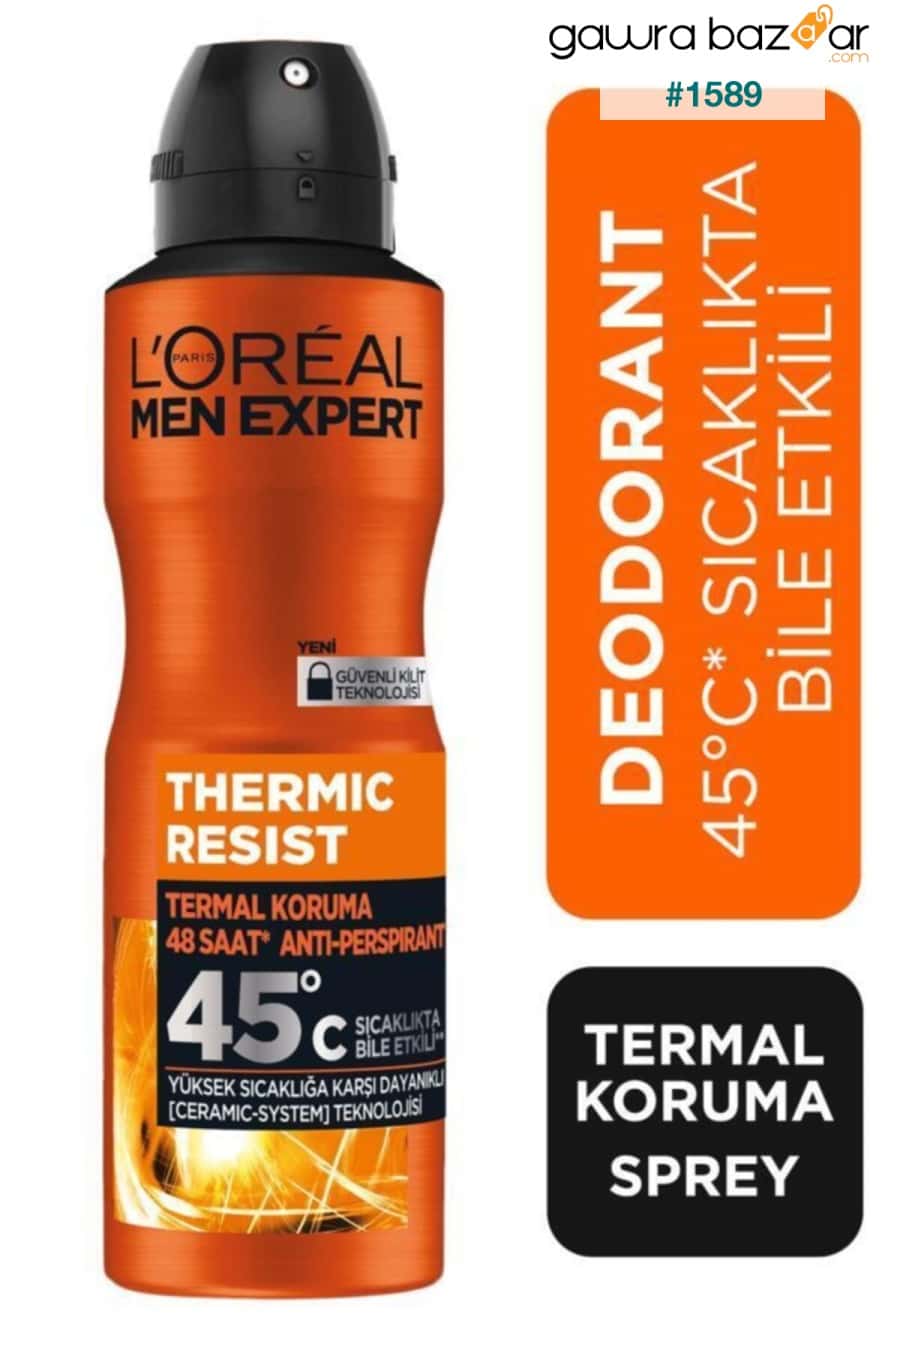 مجموعة العناية الأساسية للرجال Hydra Energetic Energizing Shower Gel 300ml + Thermic Resist Deodorant + Roll on L'Oreal Paris Men Expert 2